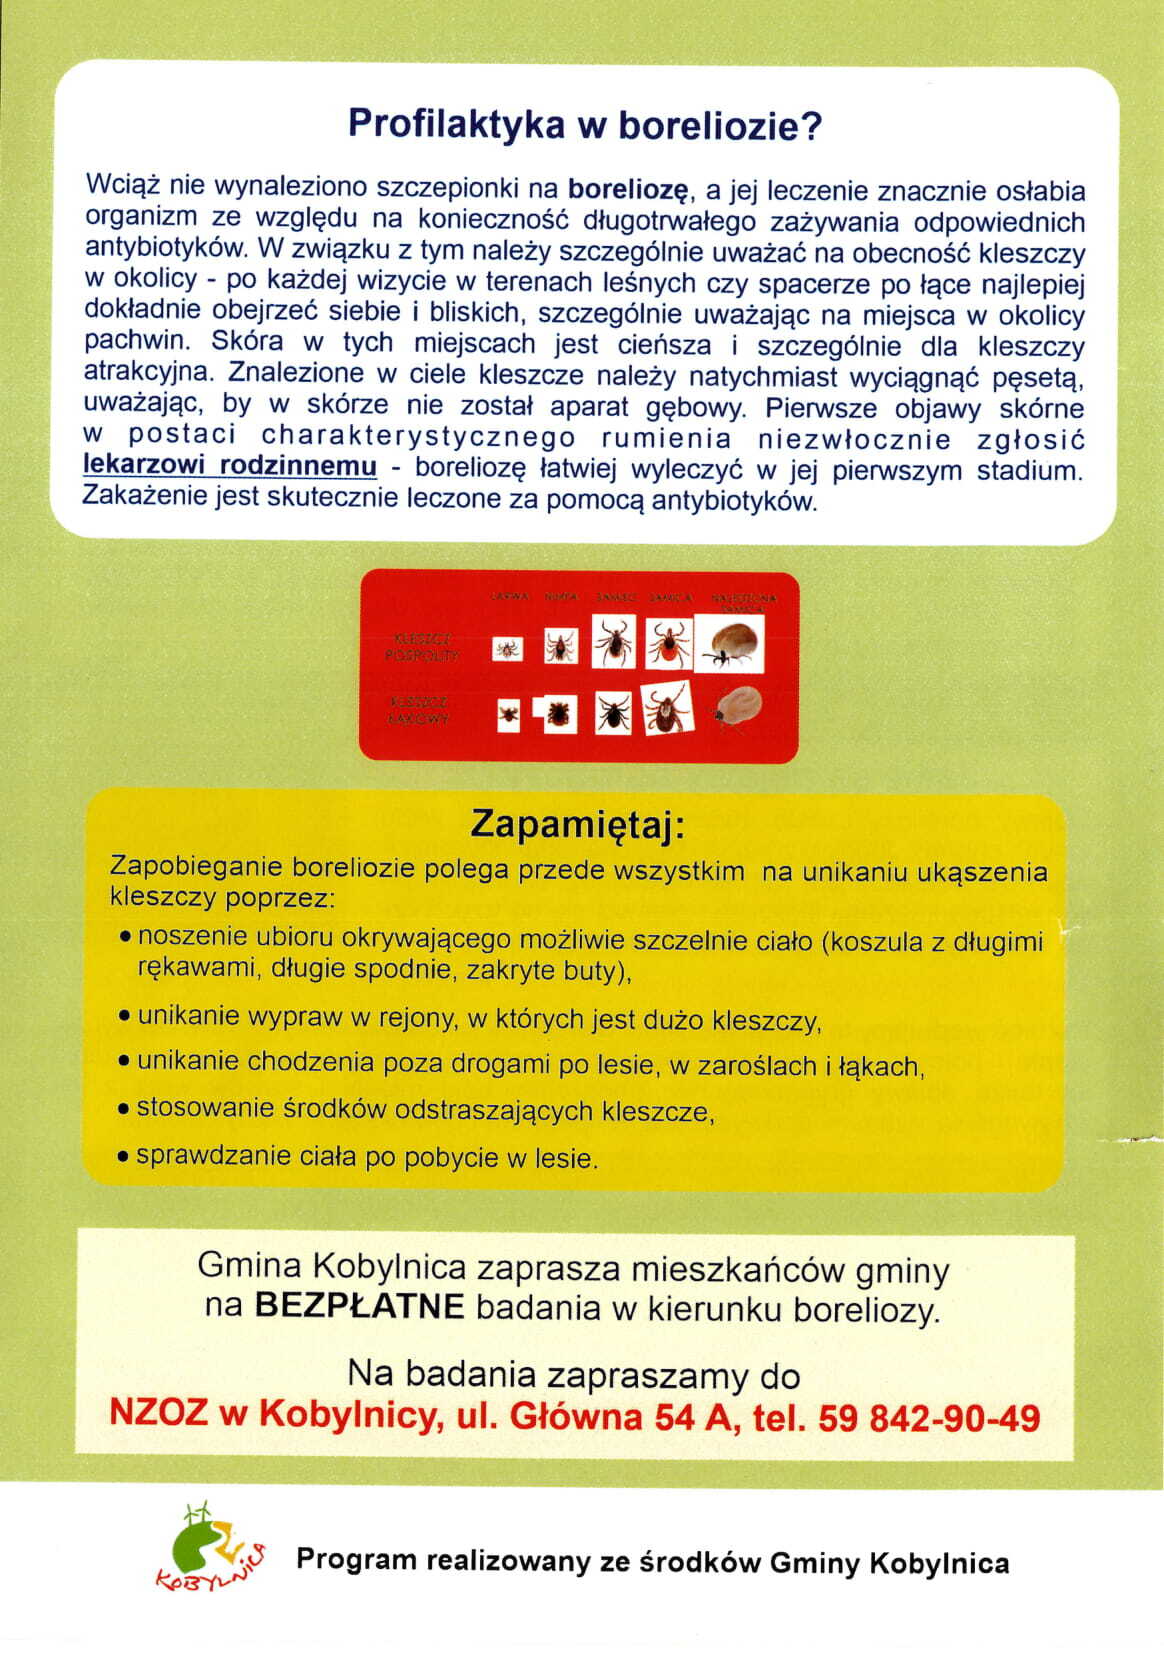 ulotka przedstawiająca Program profilaktyki i wczesnej diagnostyki boreliozy w populacji osób dorosłych w Gminie Kobylnica na lata 2021 - 2025 